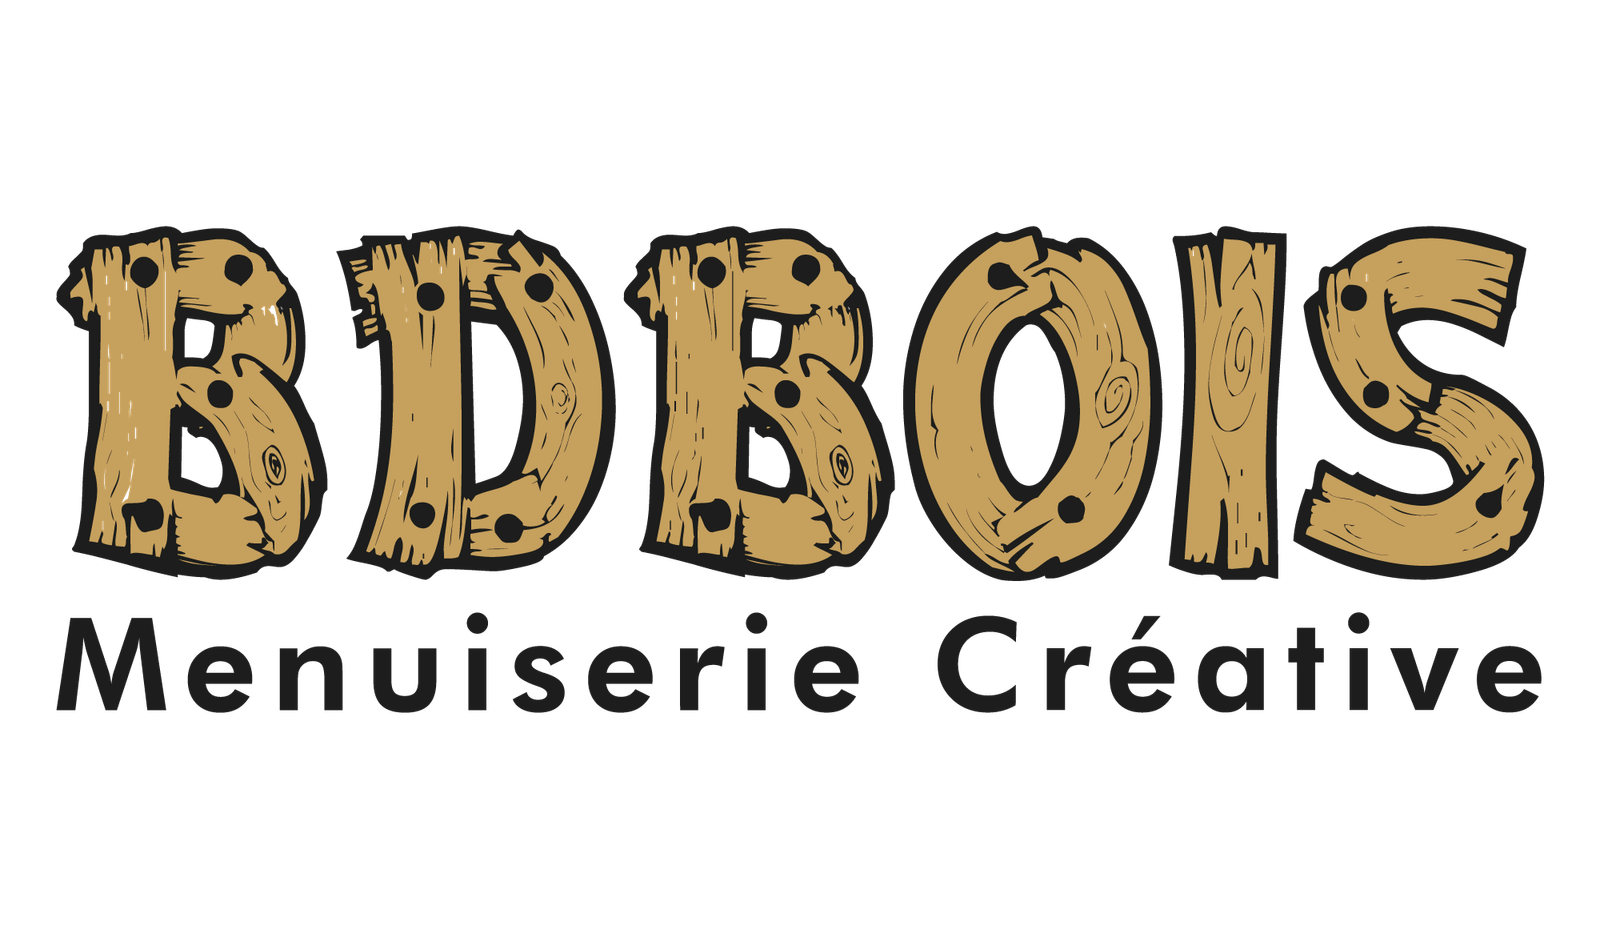 Logo BDBOIS